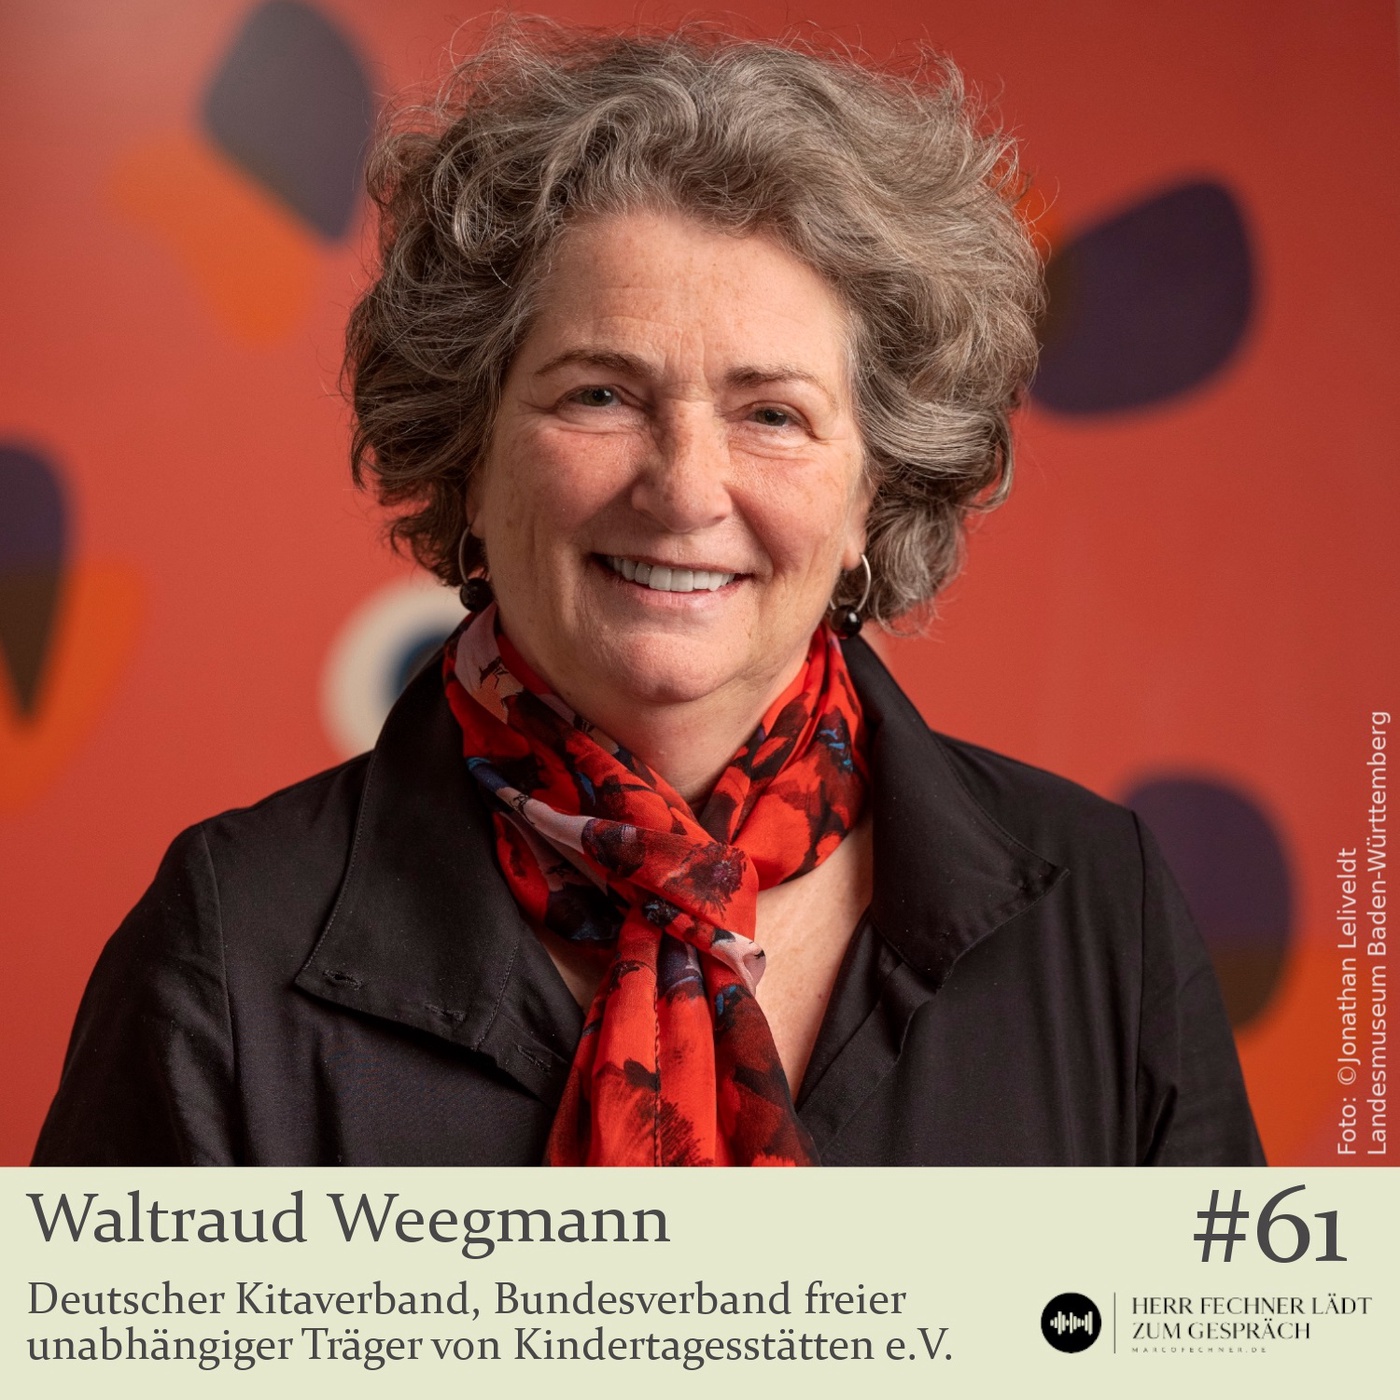 Waltraud Weegmann, Deutscher Kitaverband